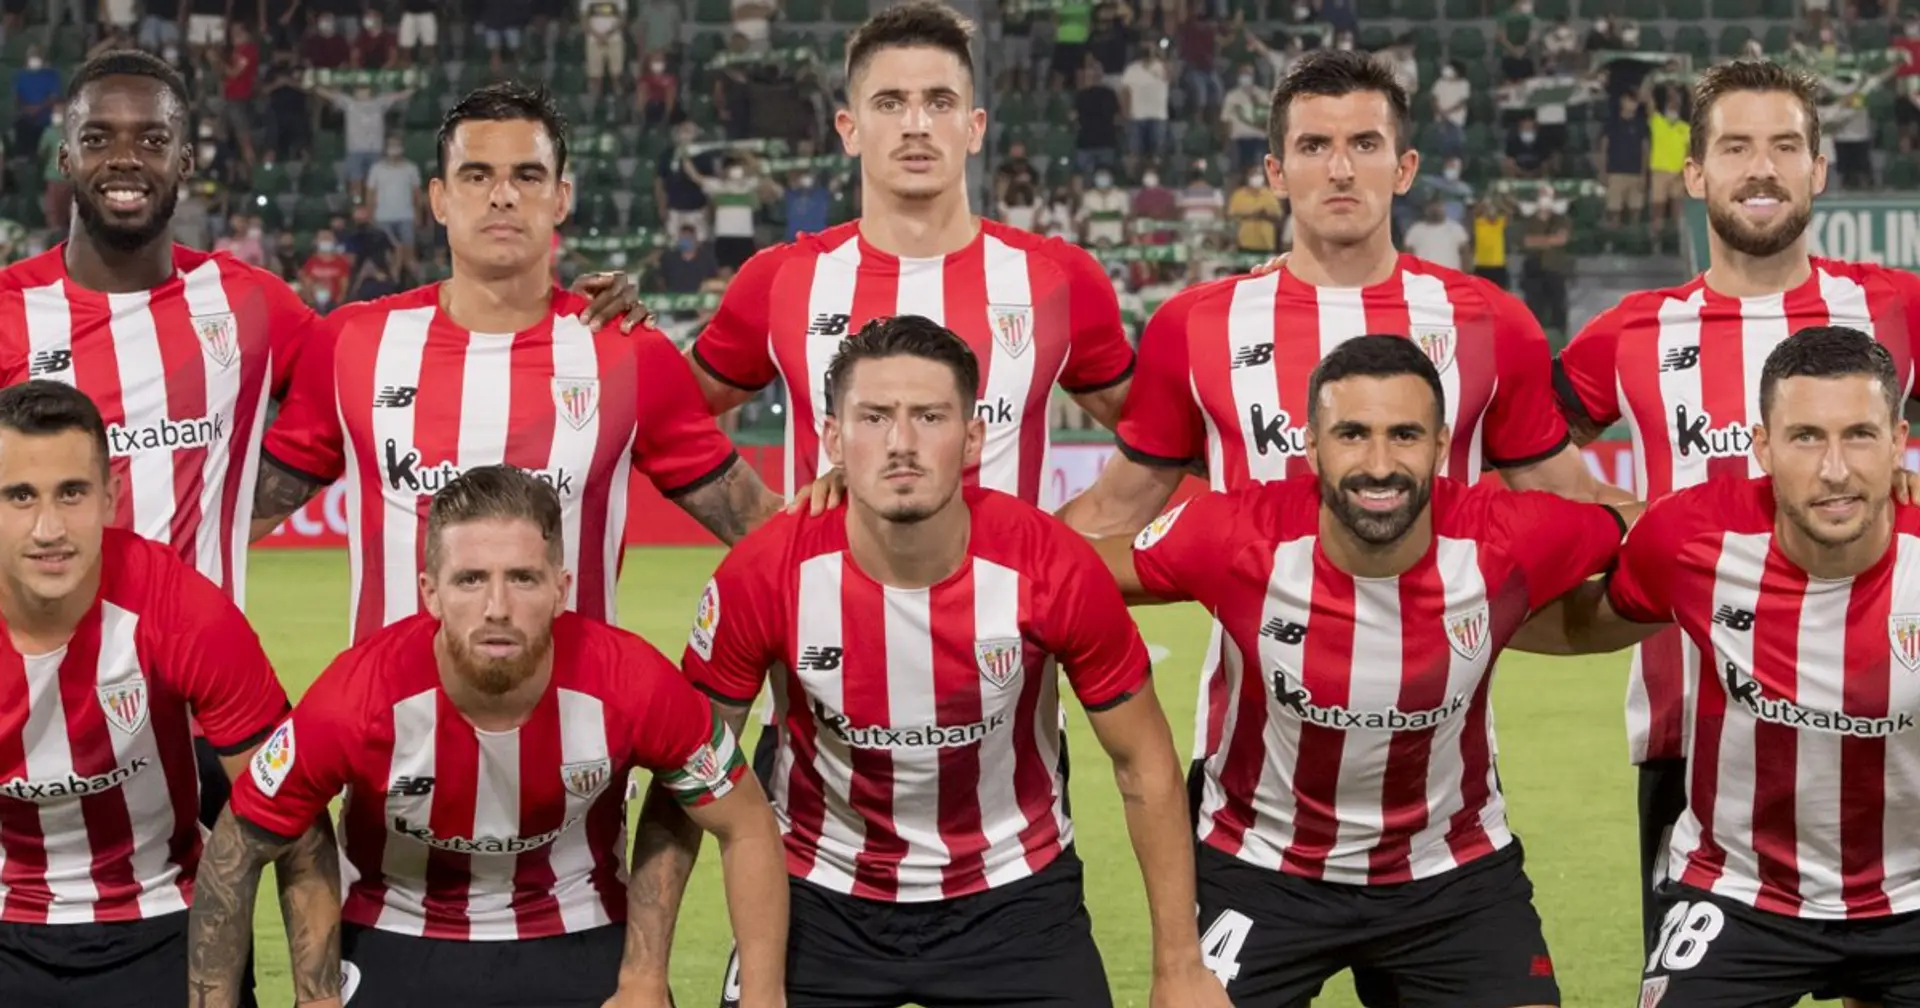 La regola d'oro (non scritta) dell'Athletic Bilbao può cambiare? 